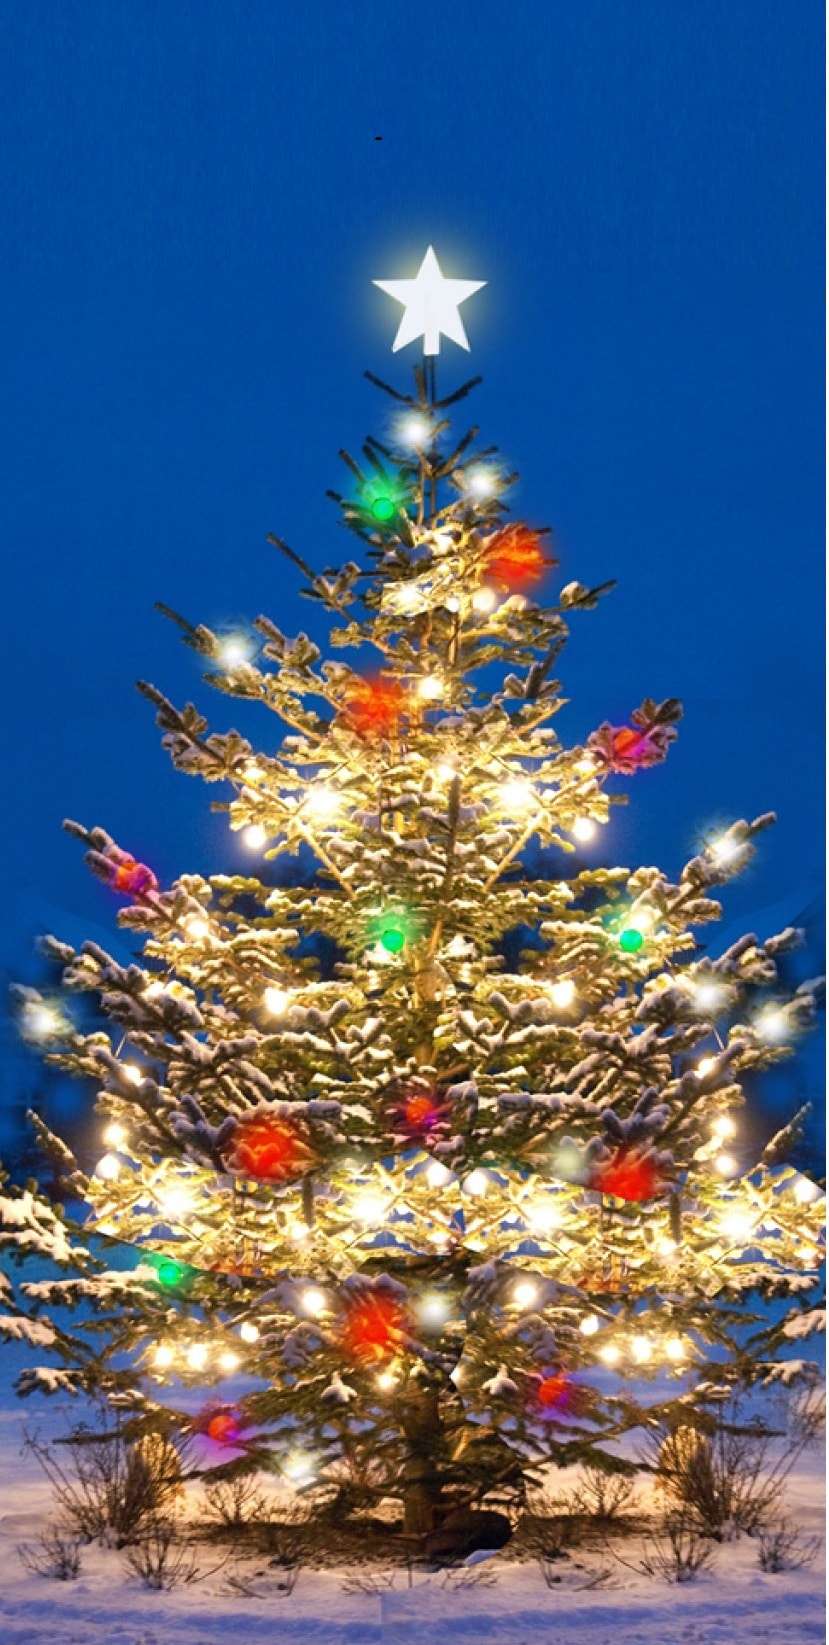 POZVÁNKA: rozsvícení vánočního stromu